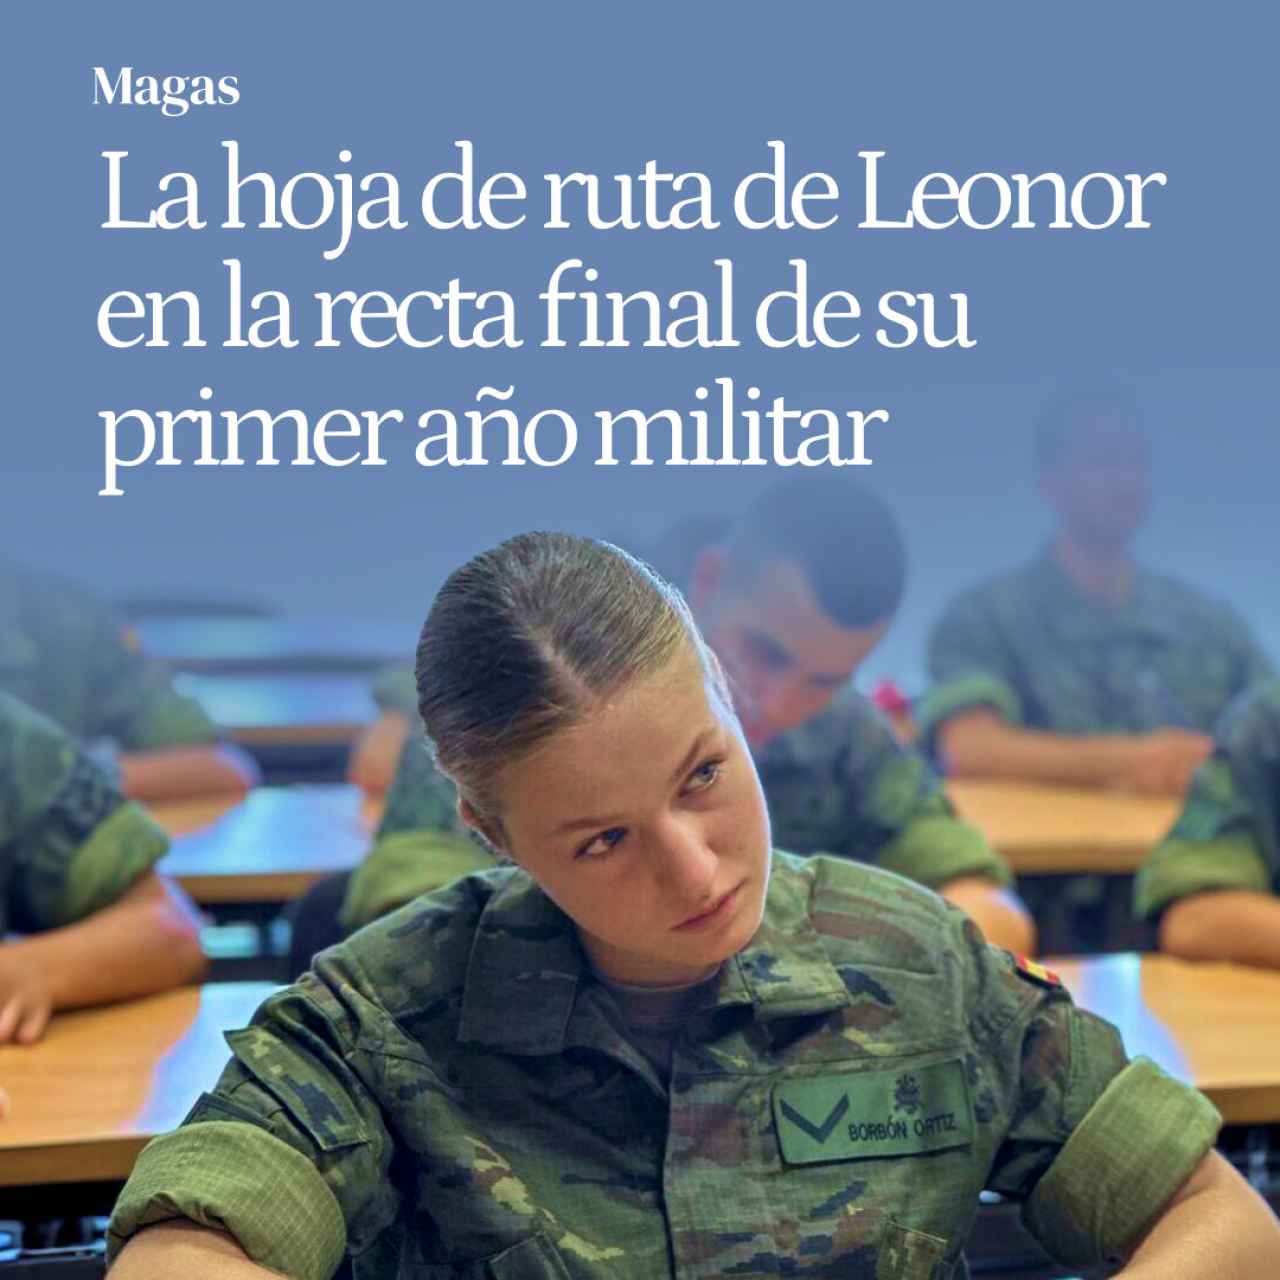 Leonor en la recta final de su primer año militar: acto en Segovia y graduación